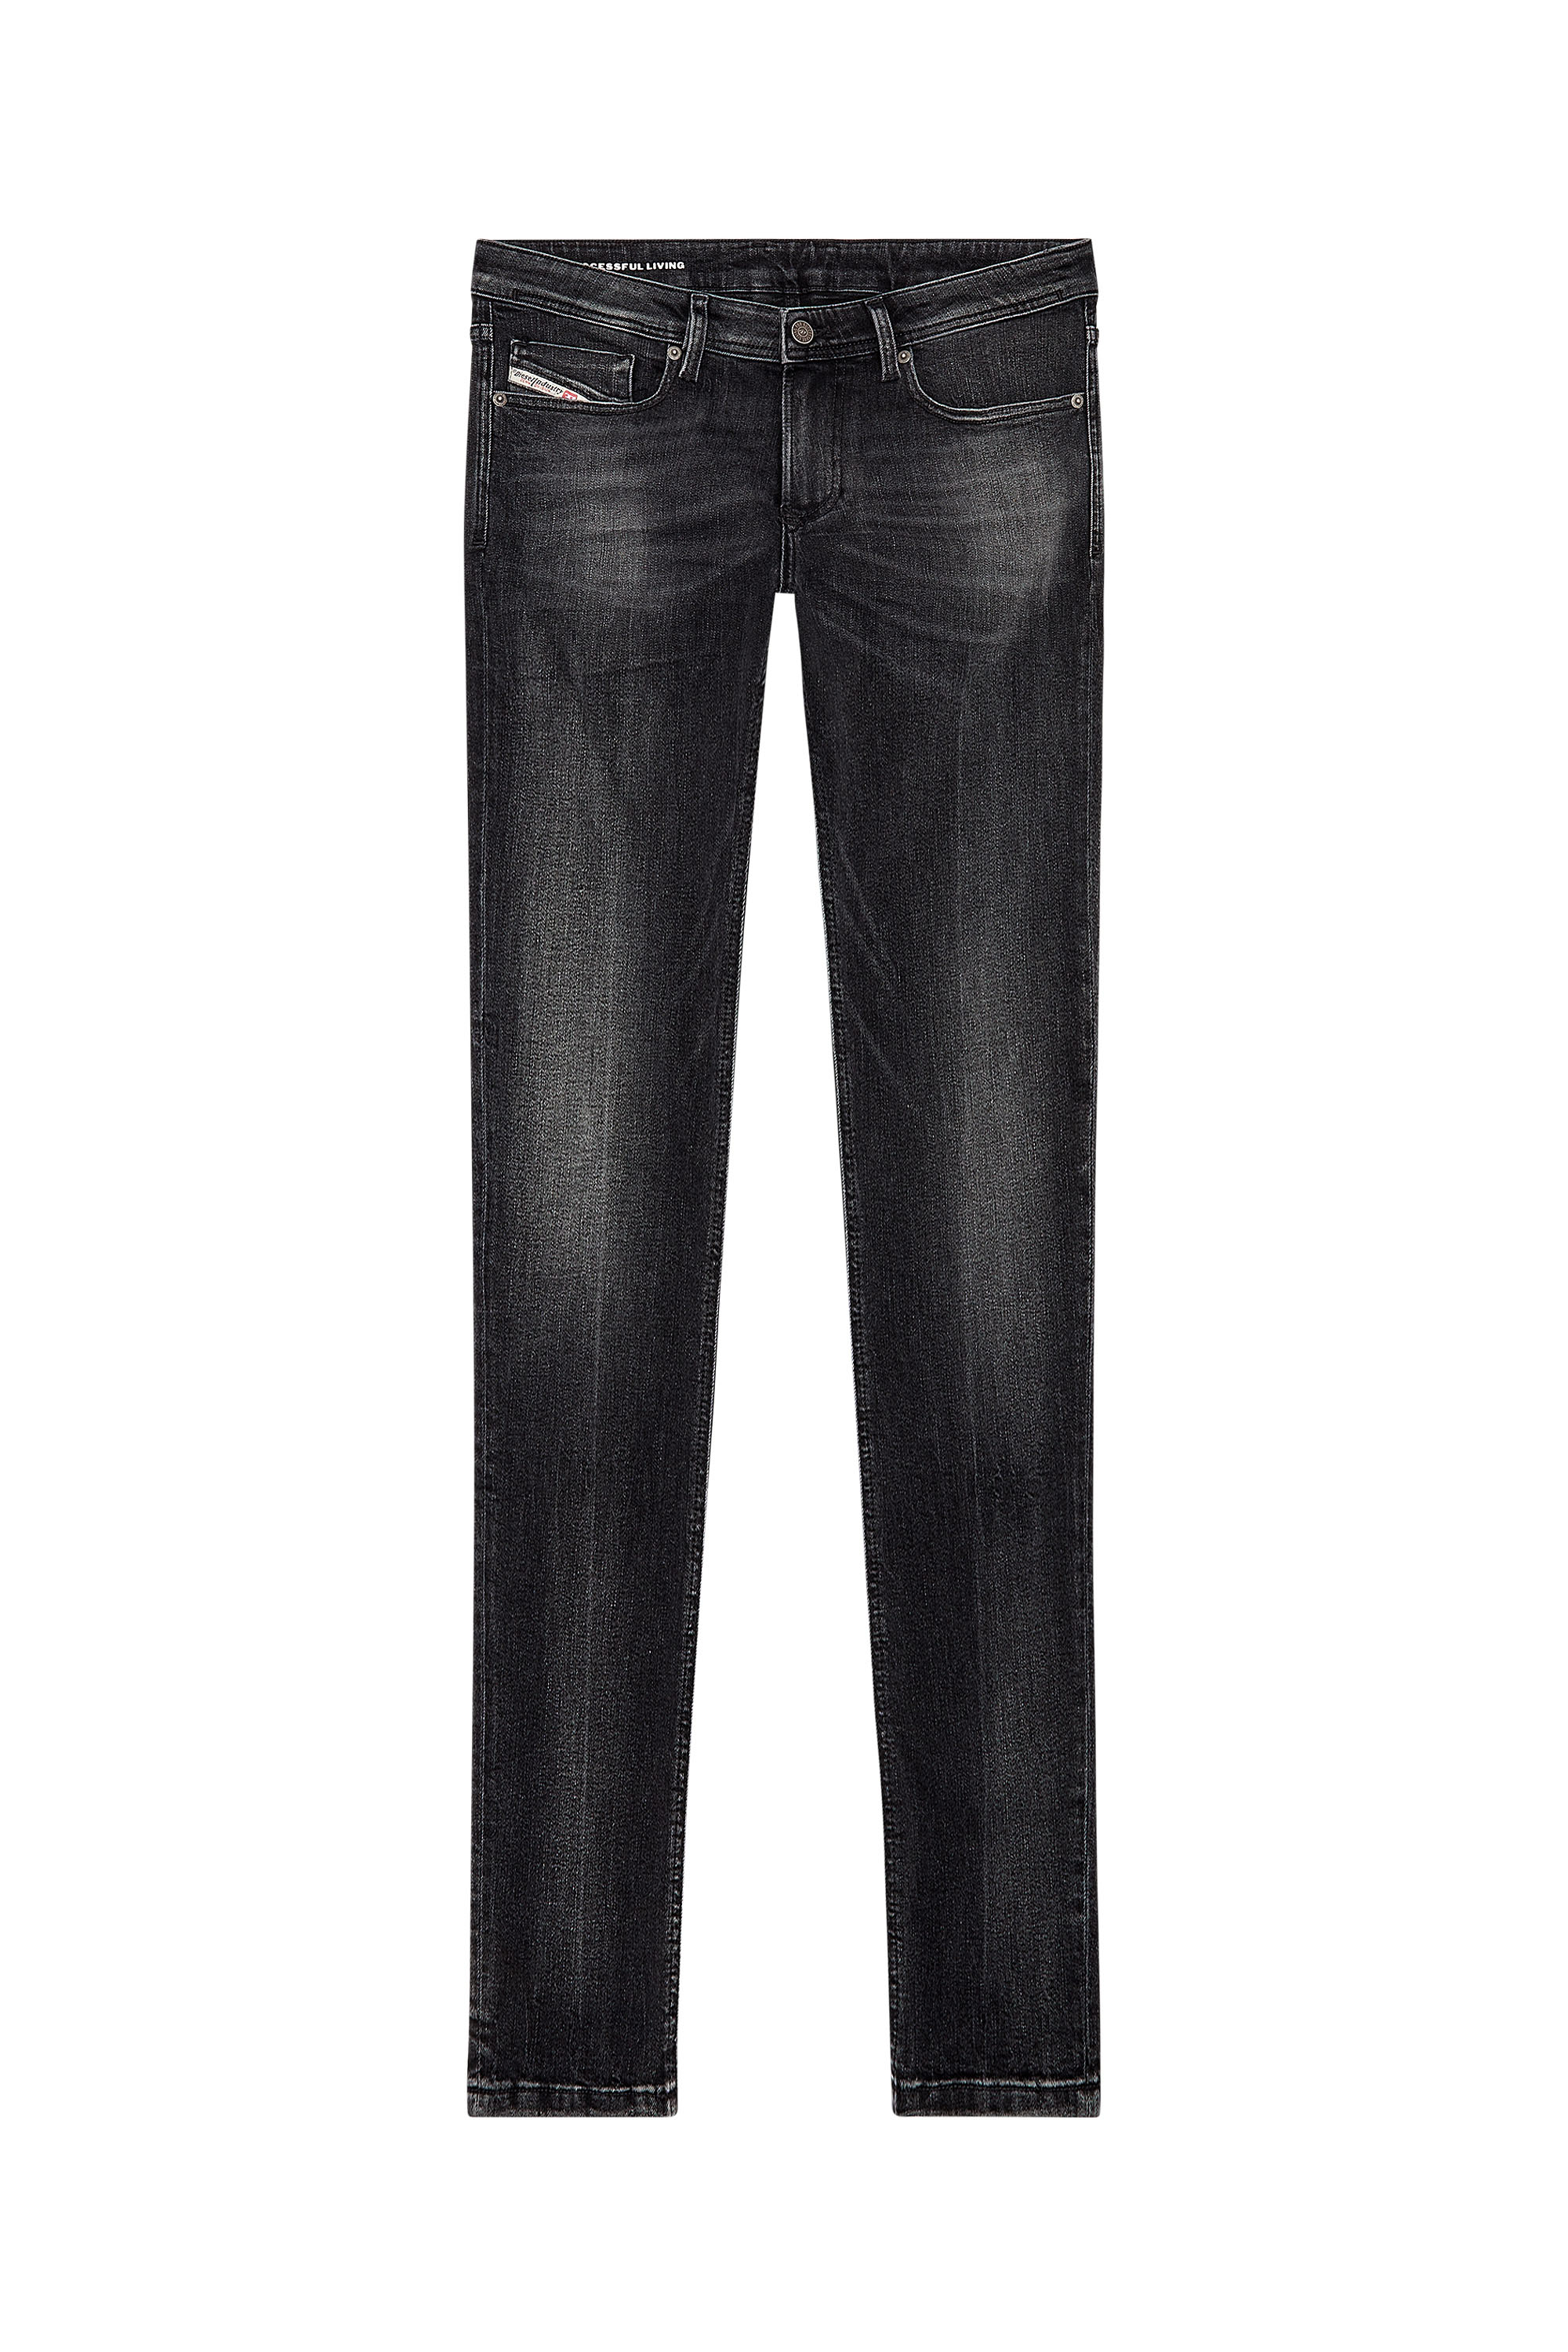 Diesel - Skinny Jeans 1979 Sleenker 0PFAX, Black/Dark grey - Image 5